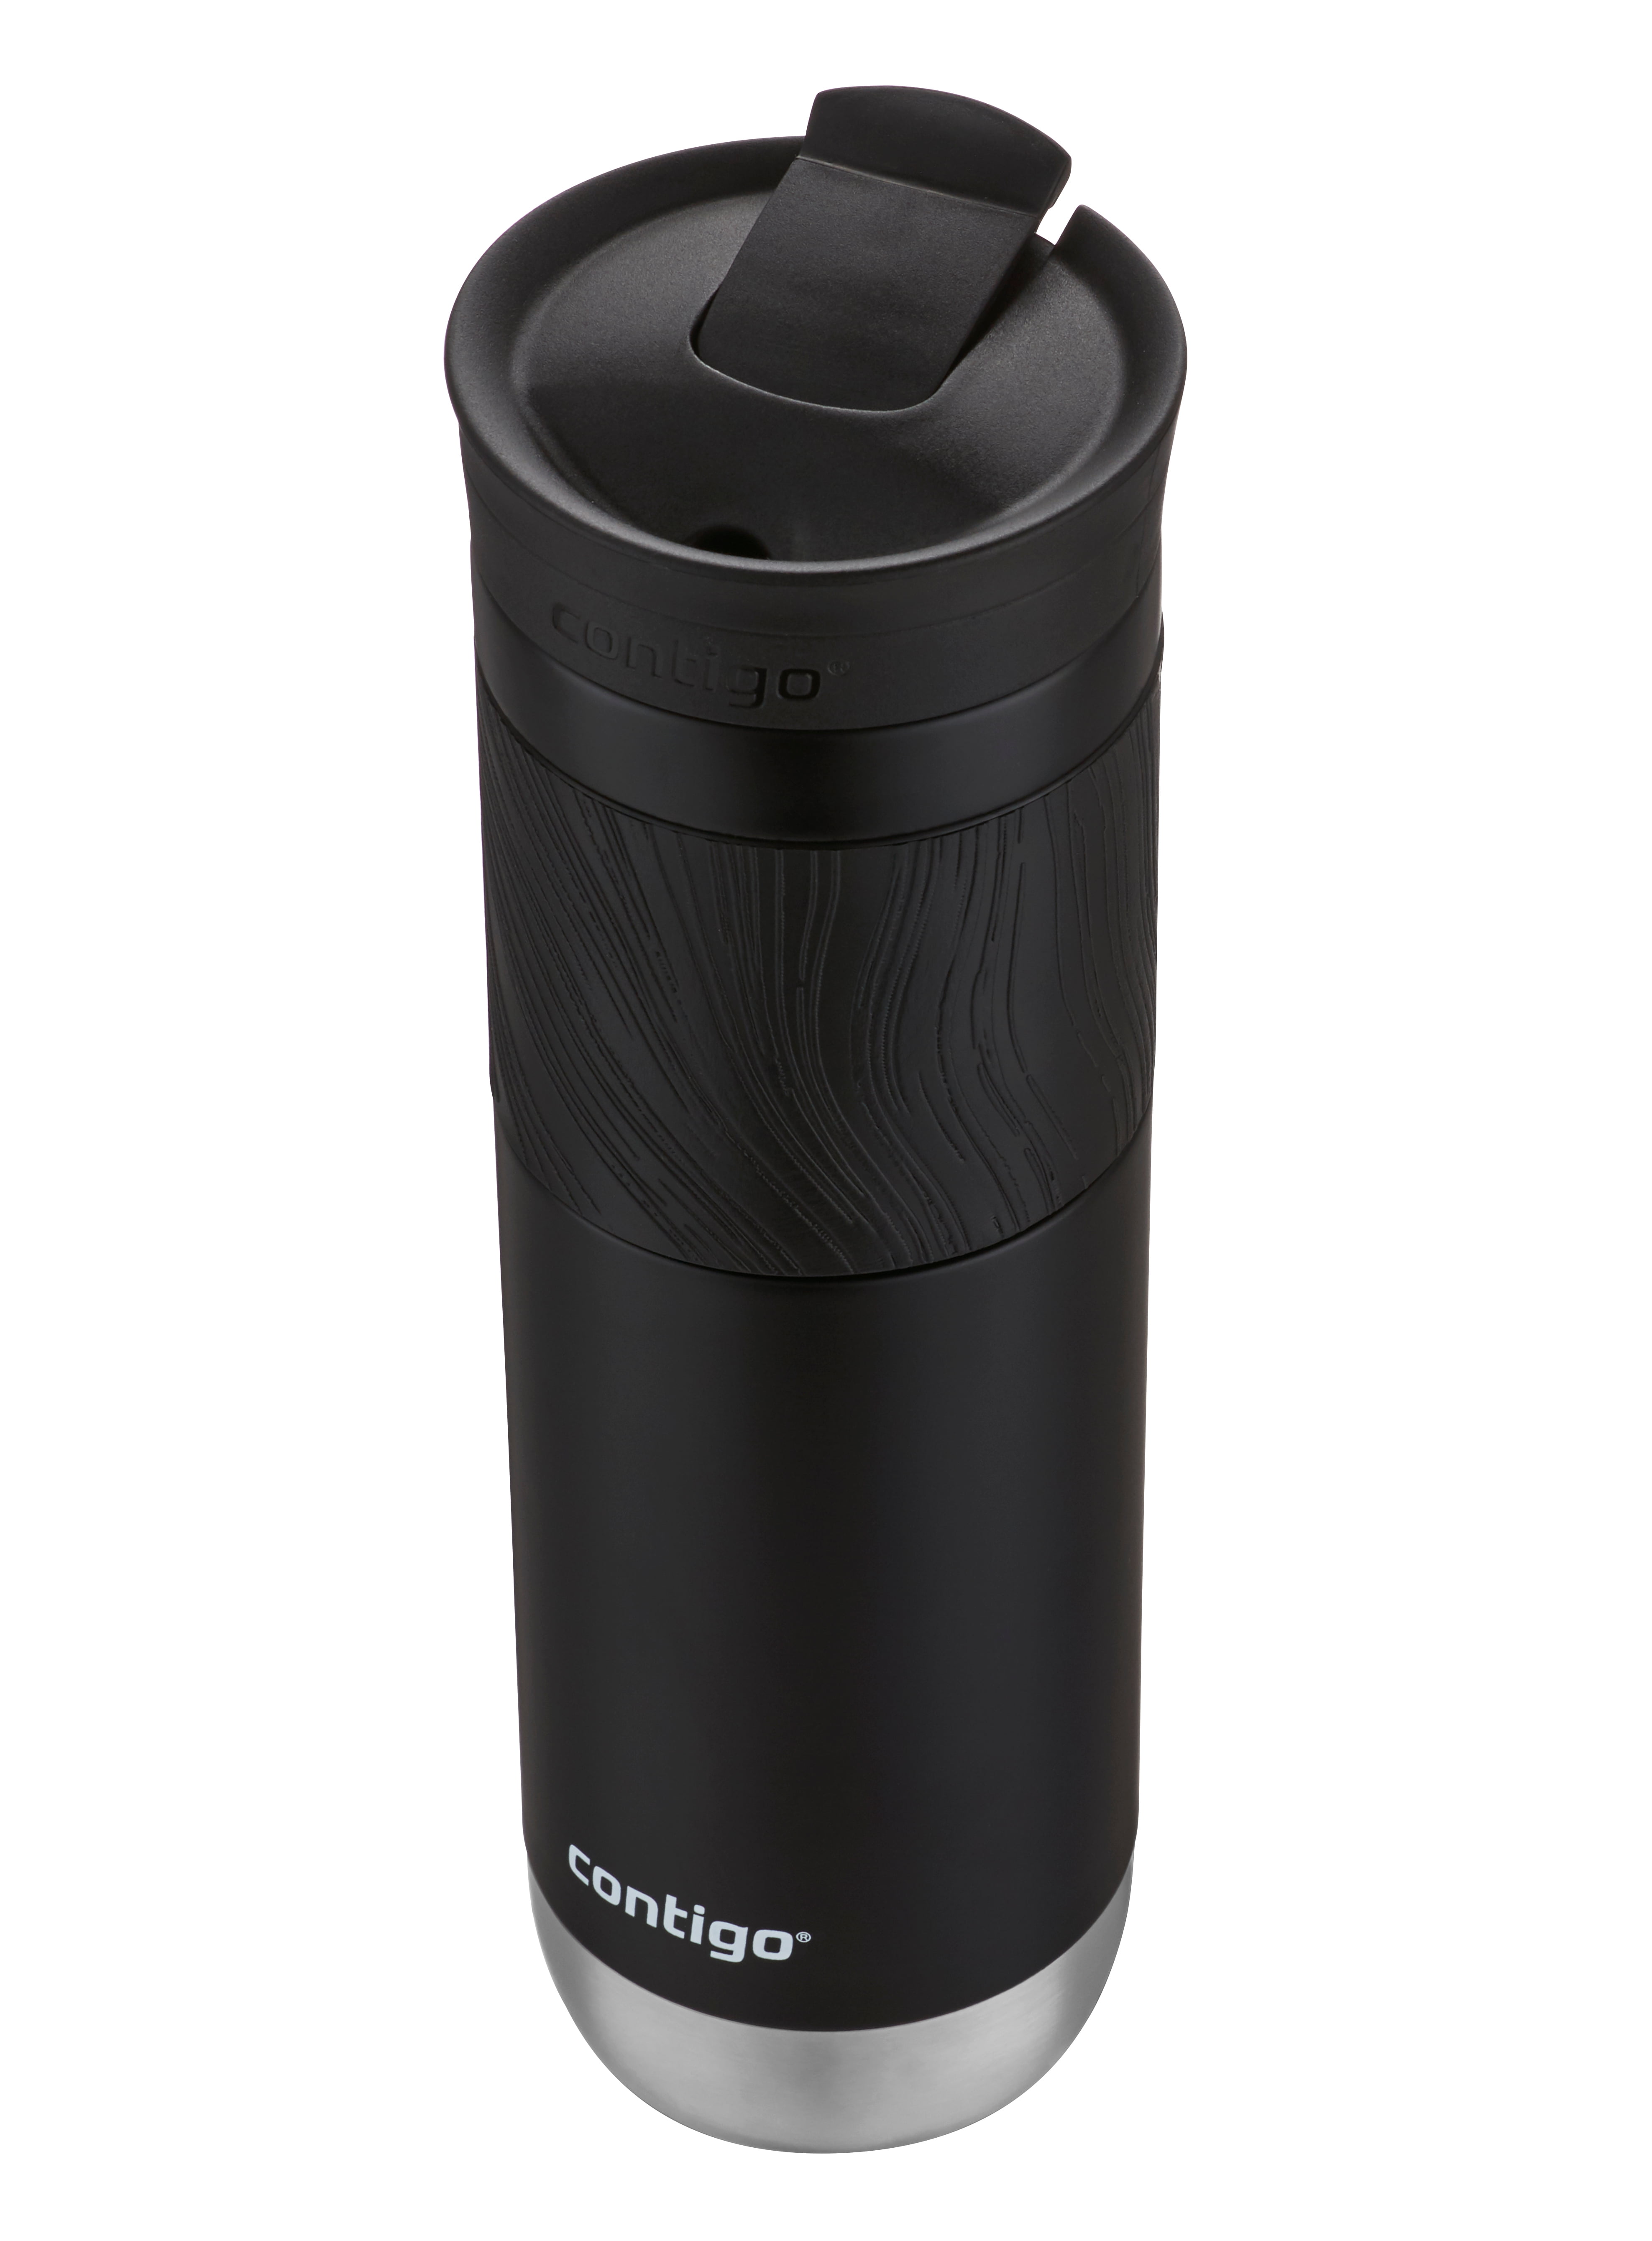 Contigo Travel Mug with Snapseal, Black 24oz - Bel Air Store Limited